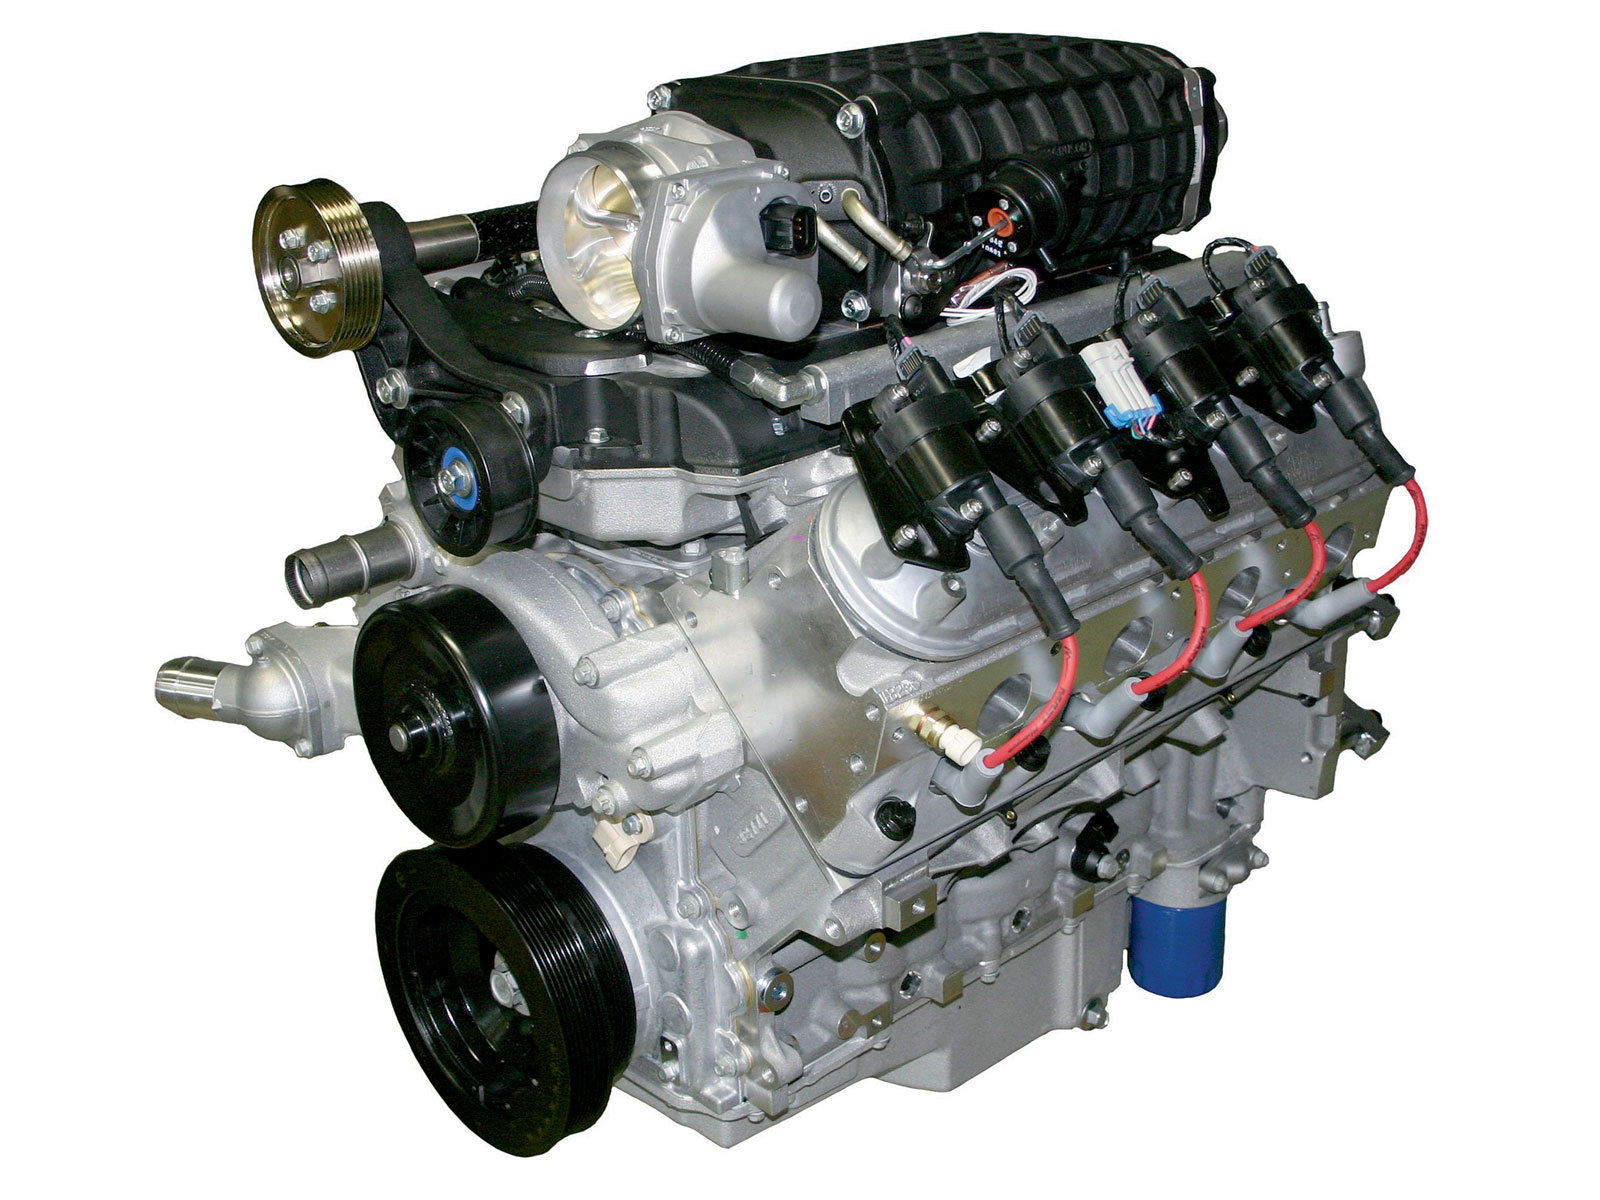 A GM LS3 Motor